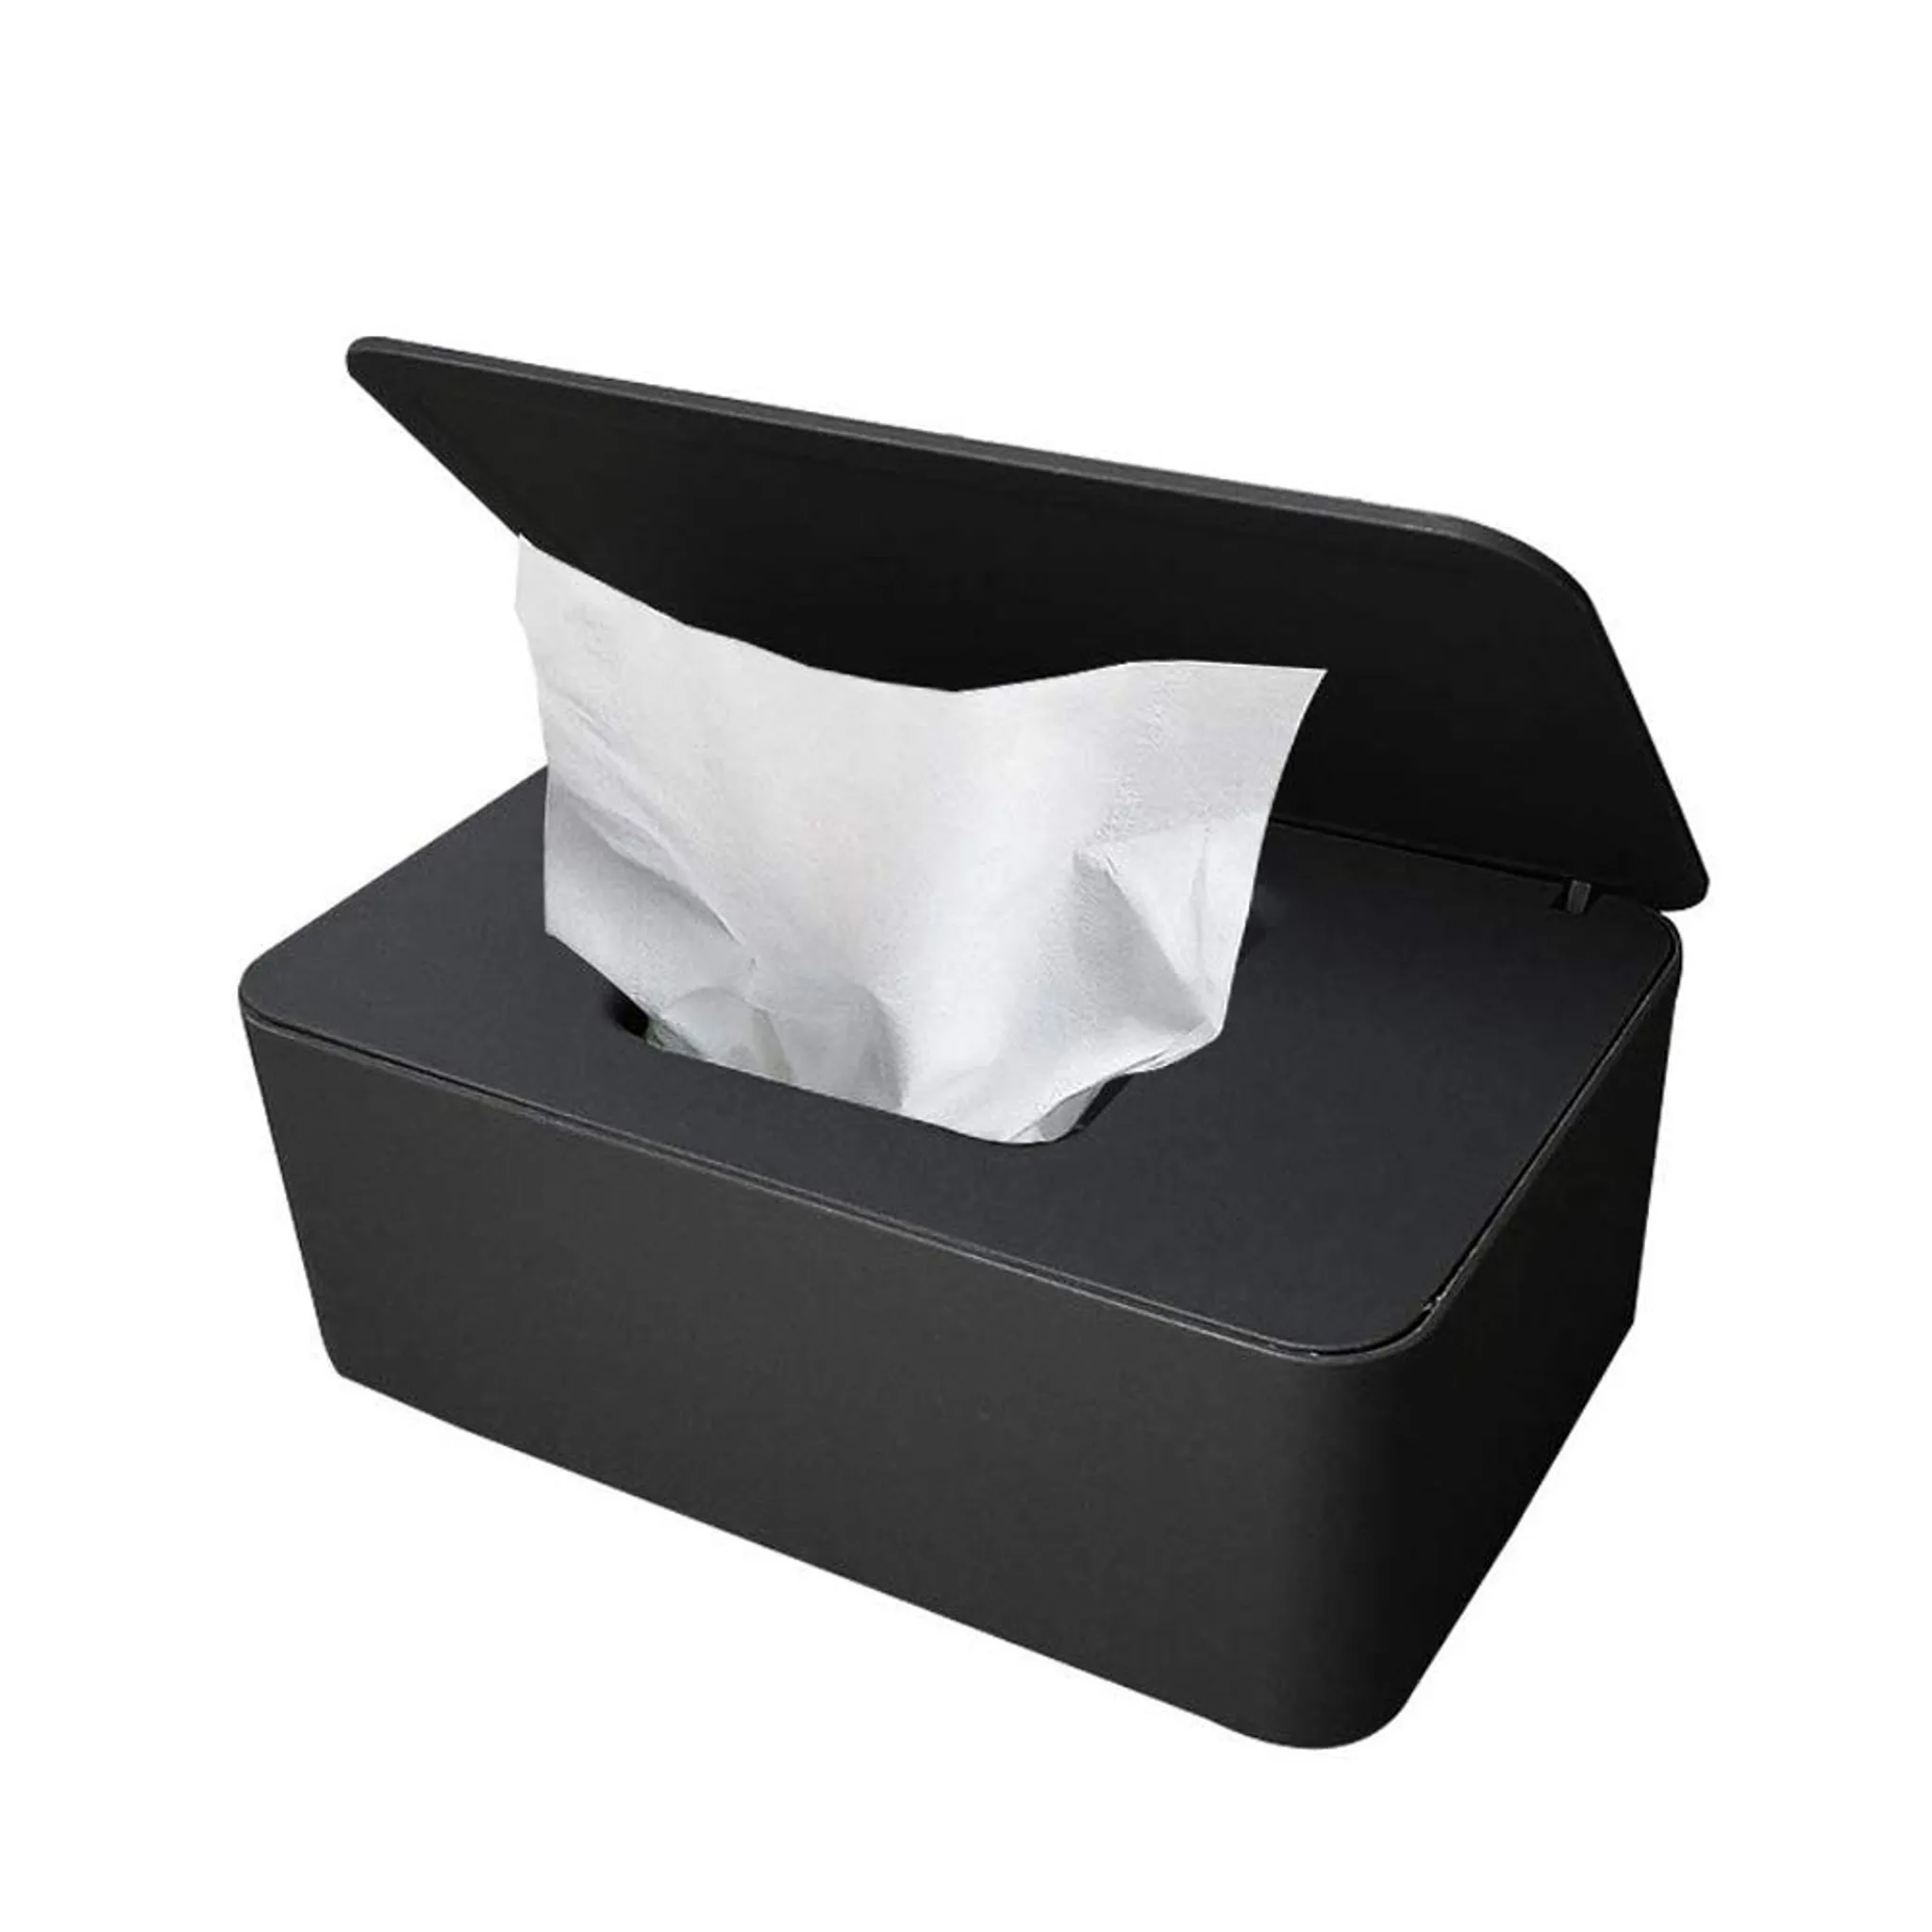 Toilettenpapier Box Tücherbox Spende Taschentuchbox mit Deckel Tissue Aufbewahrungskoffer Serviettenbox Schwarz Staubfrei Gewebe Aufbewahrung Box Feuchttücher Box Feuchttücher Spenderbox Baby 